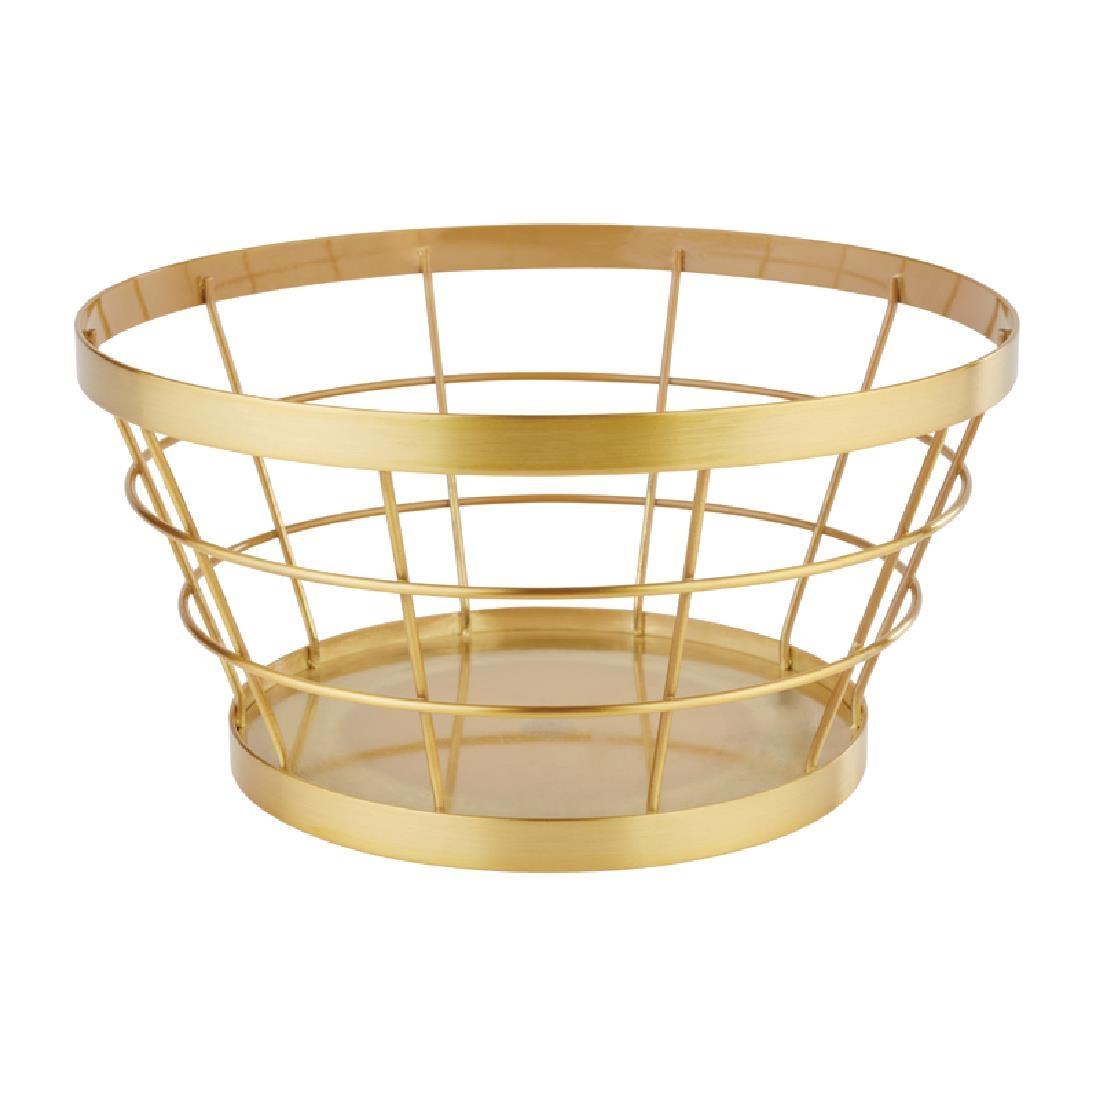 APS+ Metal Basket Gold Brushed 110 x 210mm - CW696  - 1